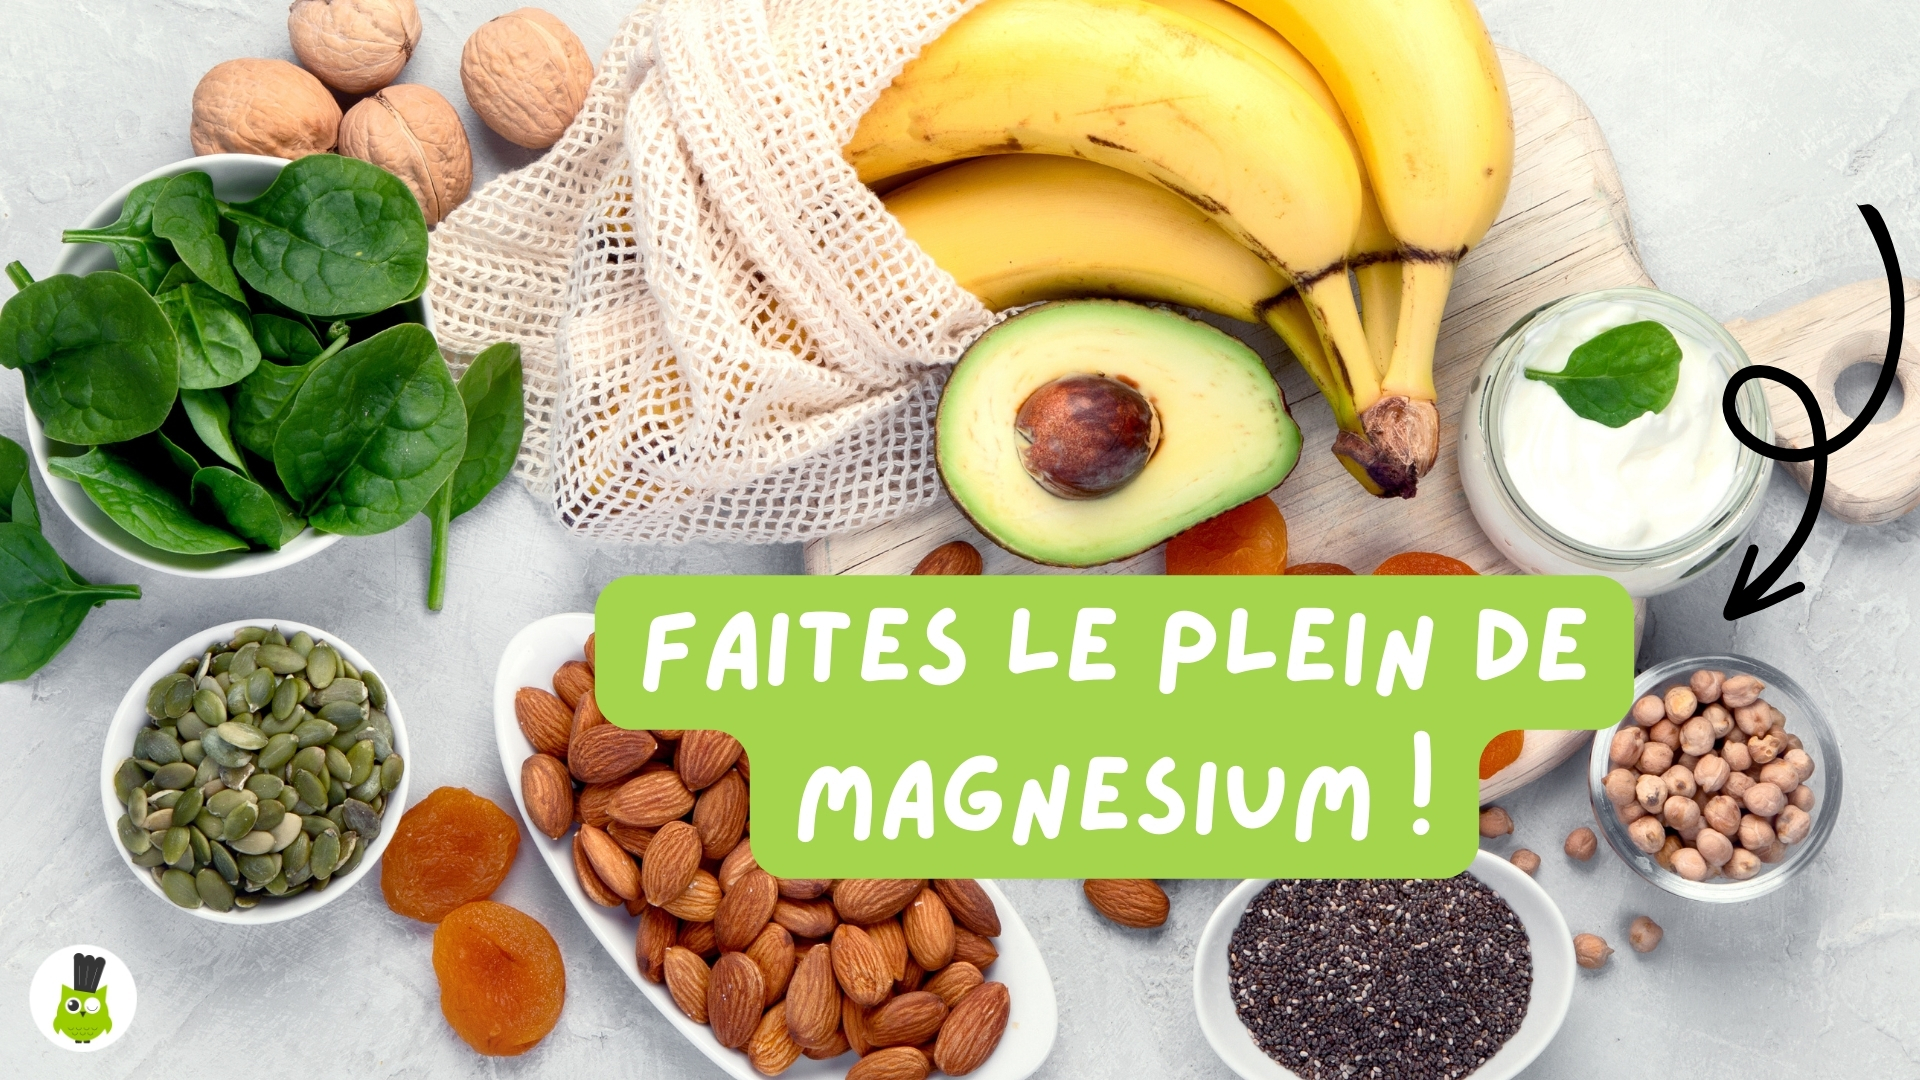 magnesium santé diététique recettes nutrition